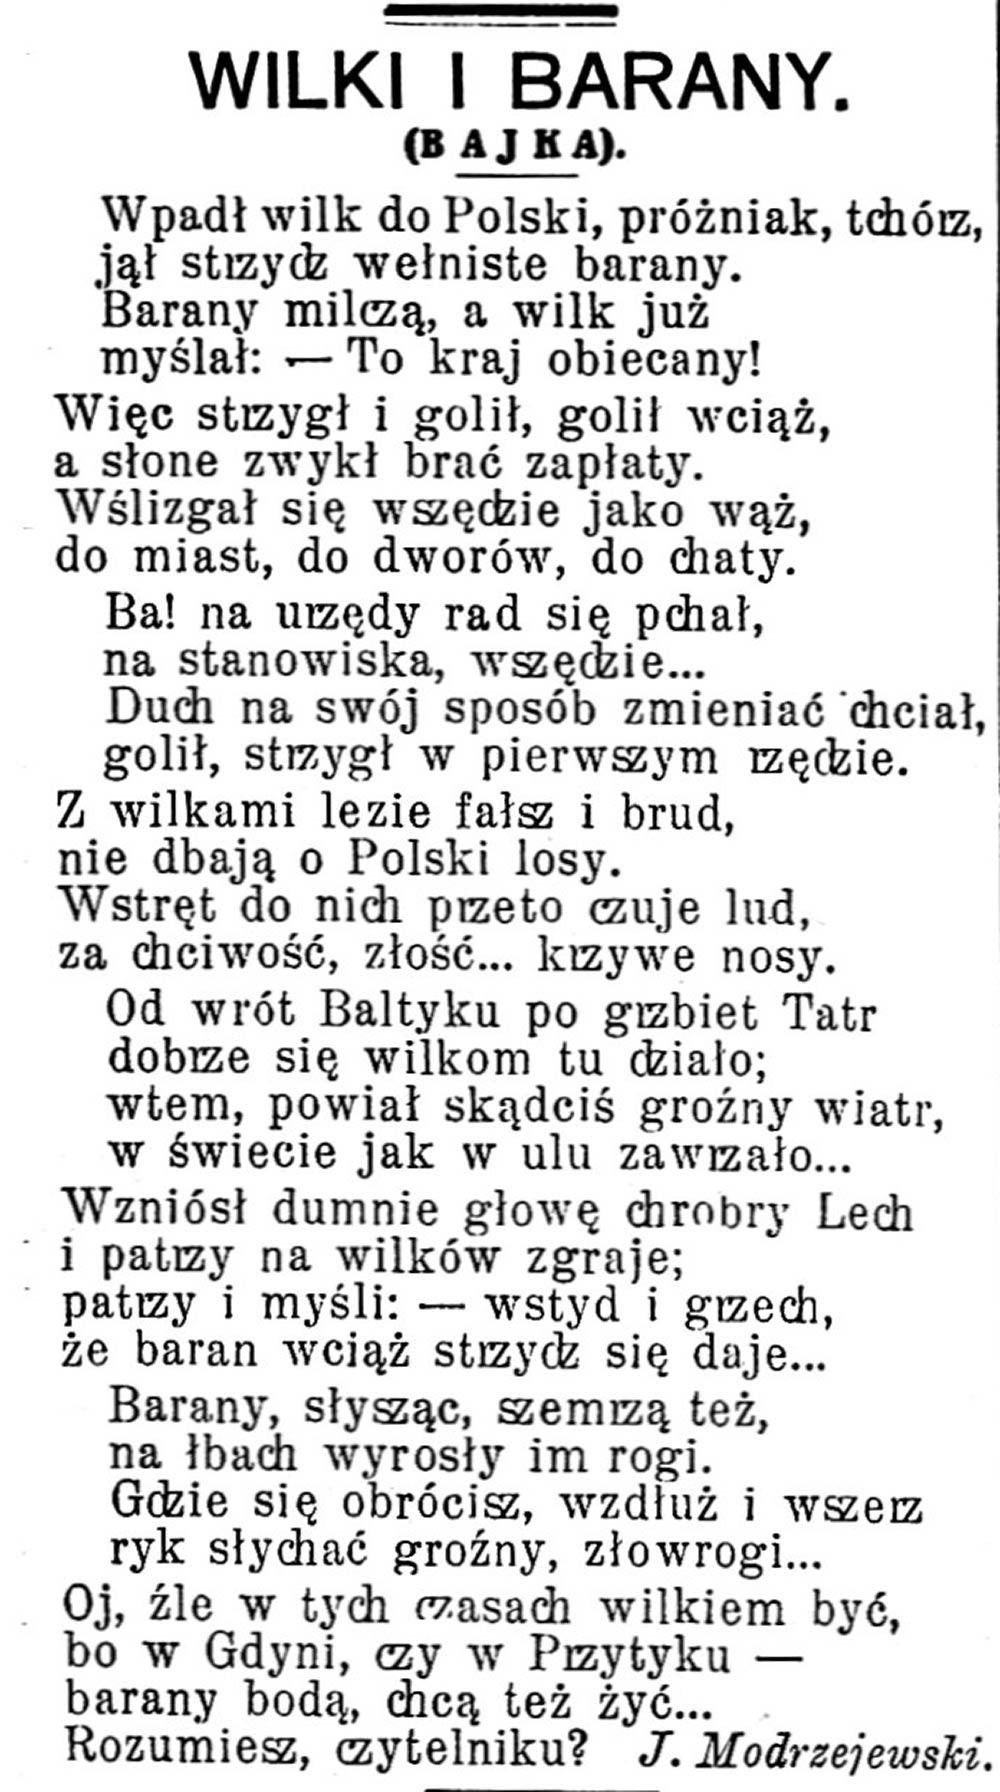 WILKI I BARANY (Bajka) // Gazeta Świąteczna. - 1936, nr 2890, s. 6